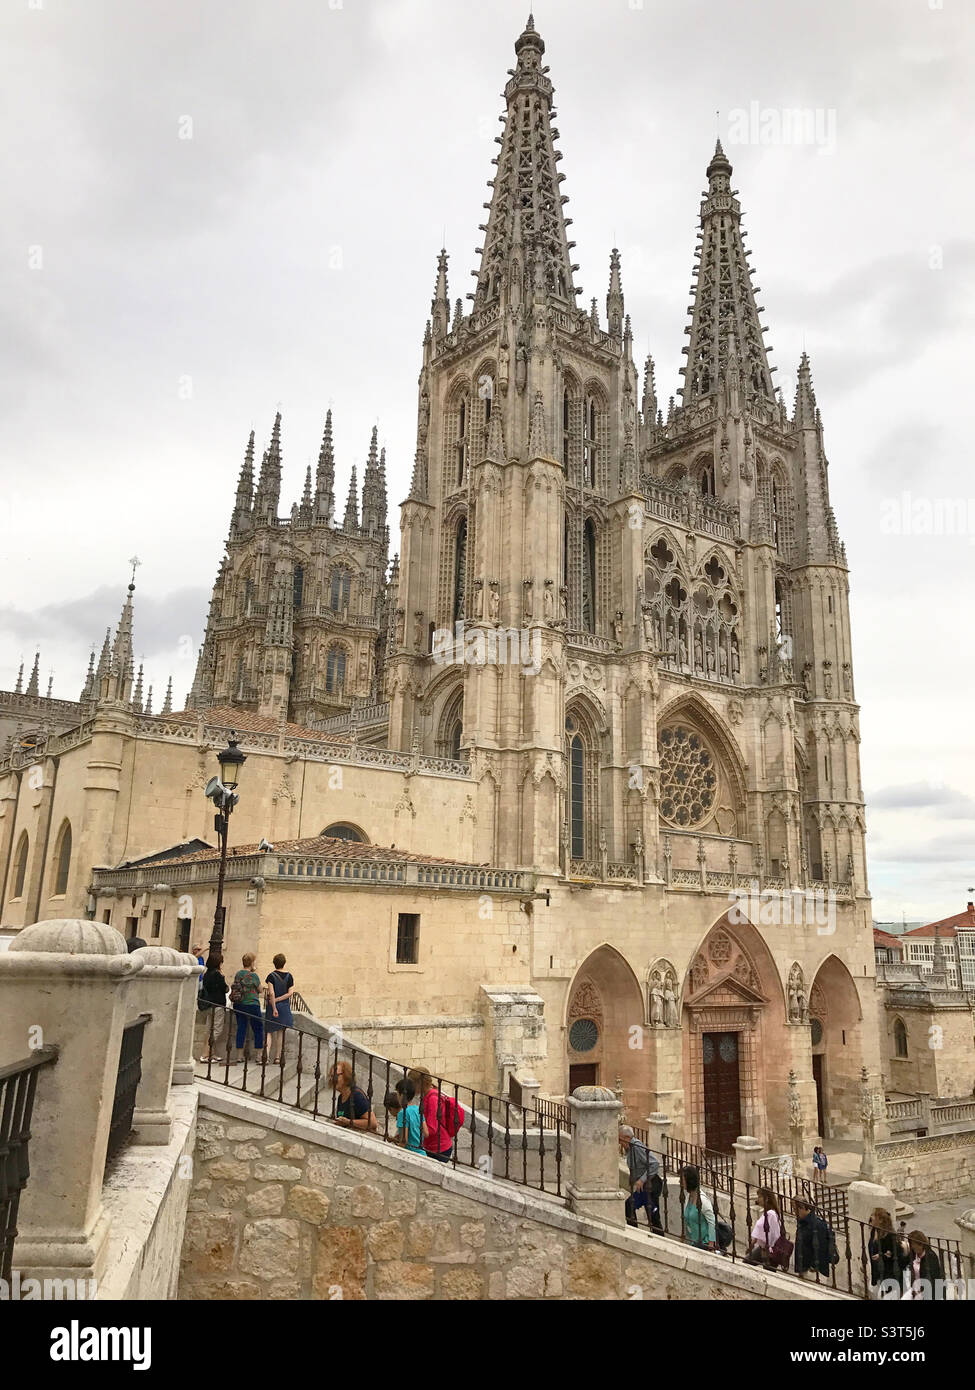 Facade of the catedral. Burgos, Spain. Stock Photo